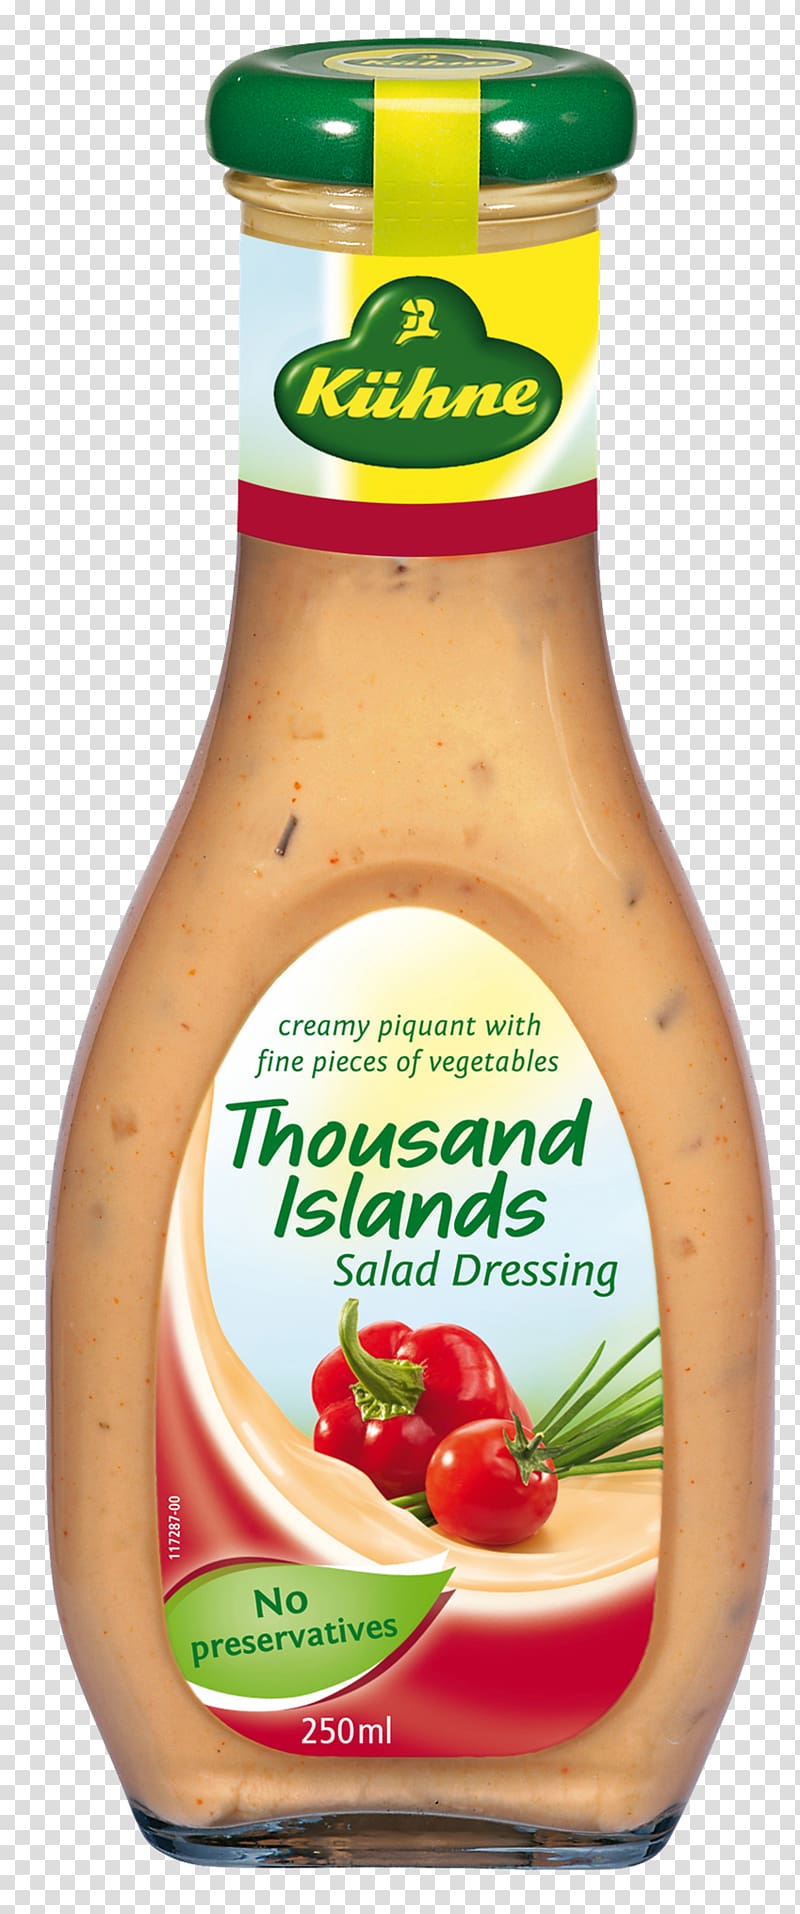 Vinaigrette Italian dressing French cuisine Thousand Island dressing Salad dressing, salad transparent background PNG clipart